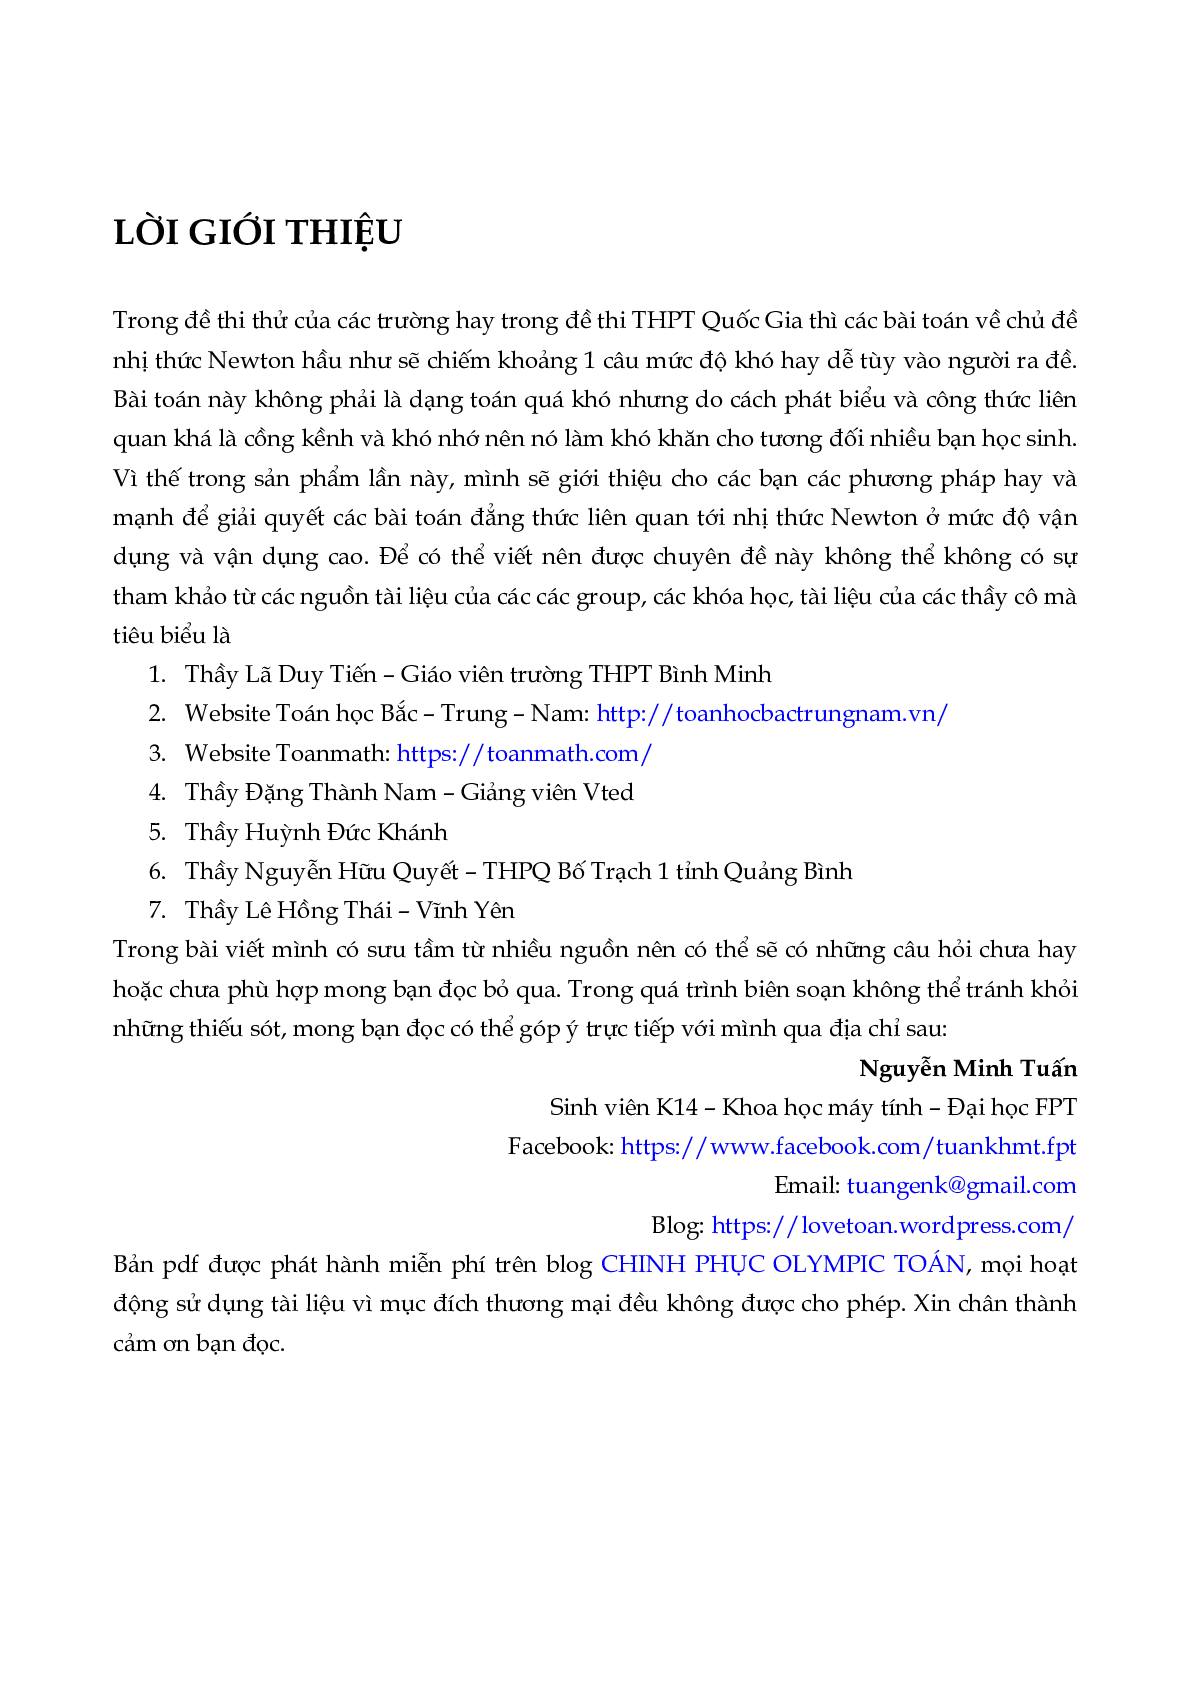 Bài tập nhị thức Niu-tơn vận dụng cao (trang 2)